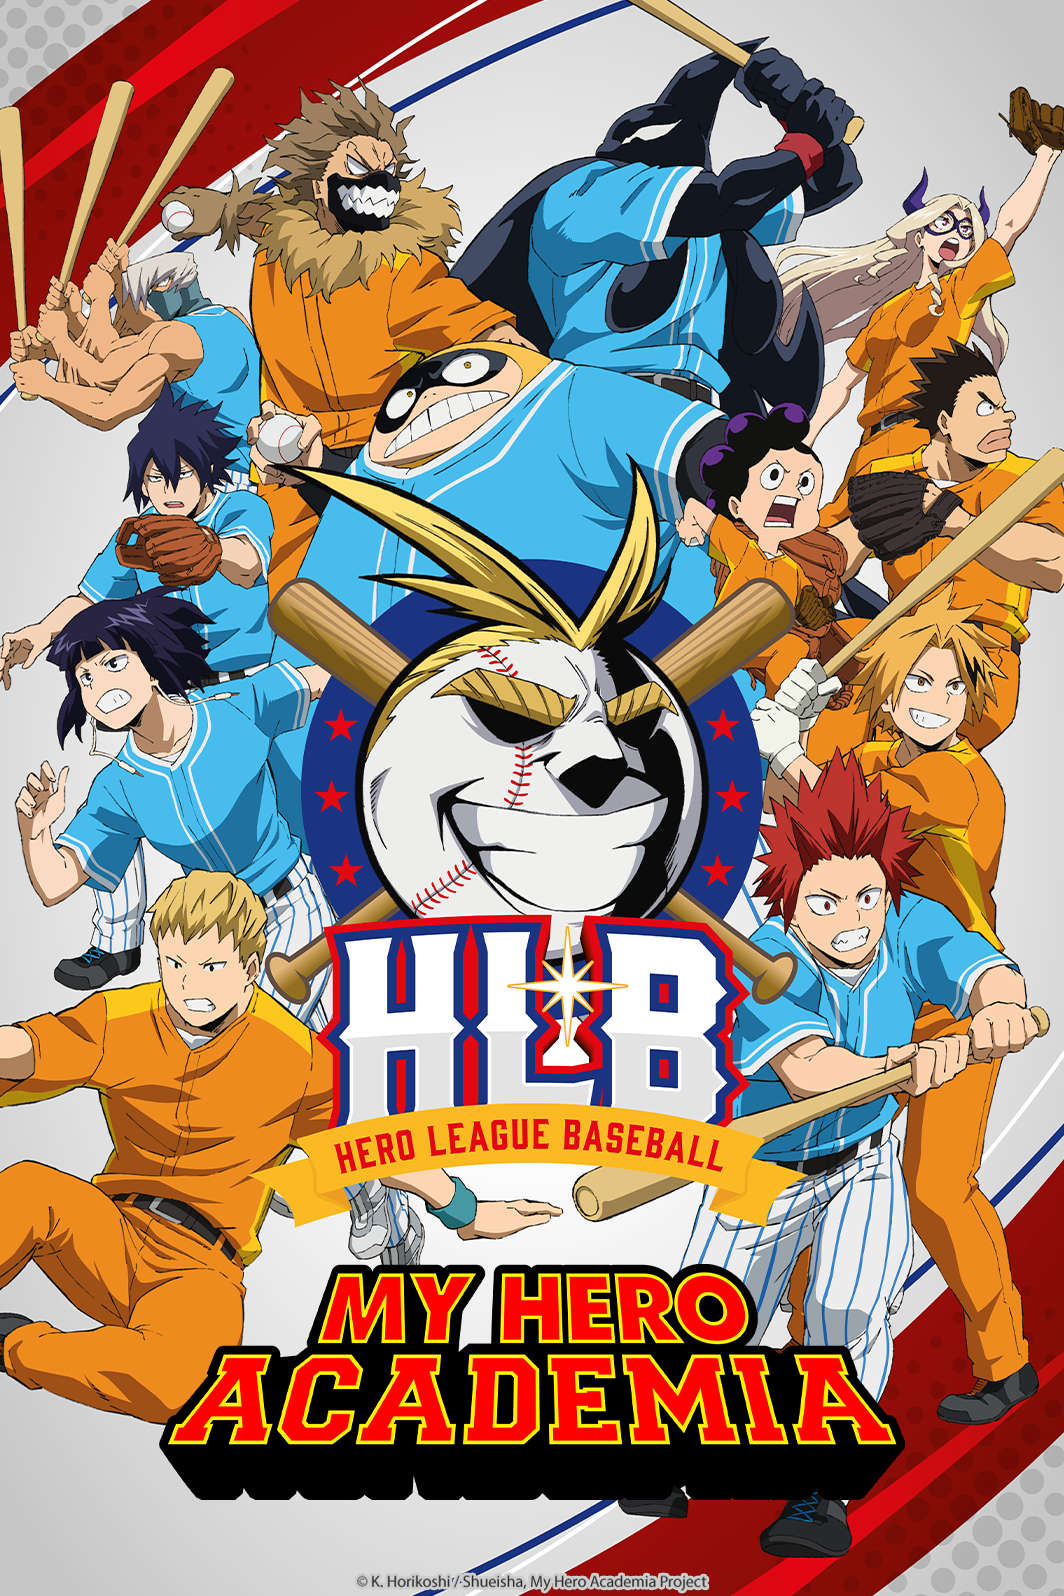 My Hero Academia 5x01 ONLINE EN VIVO vía Crunchyroll con